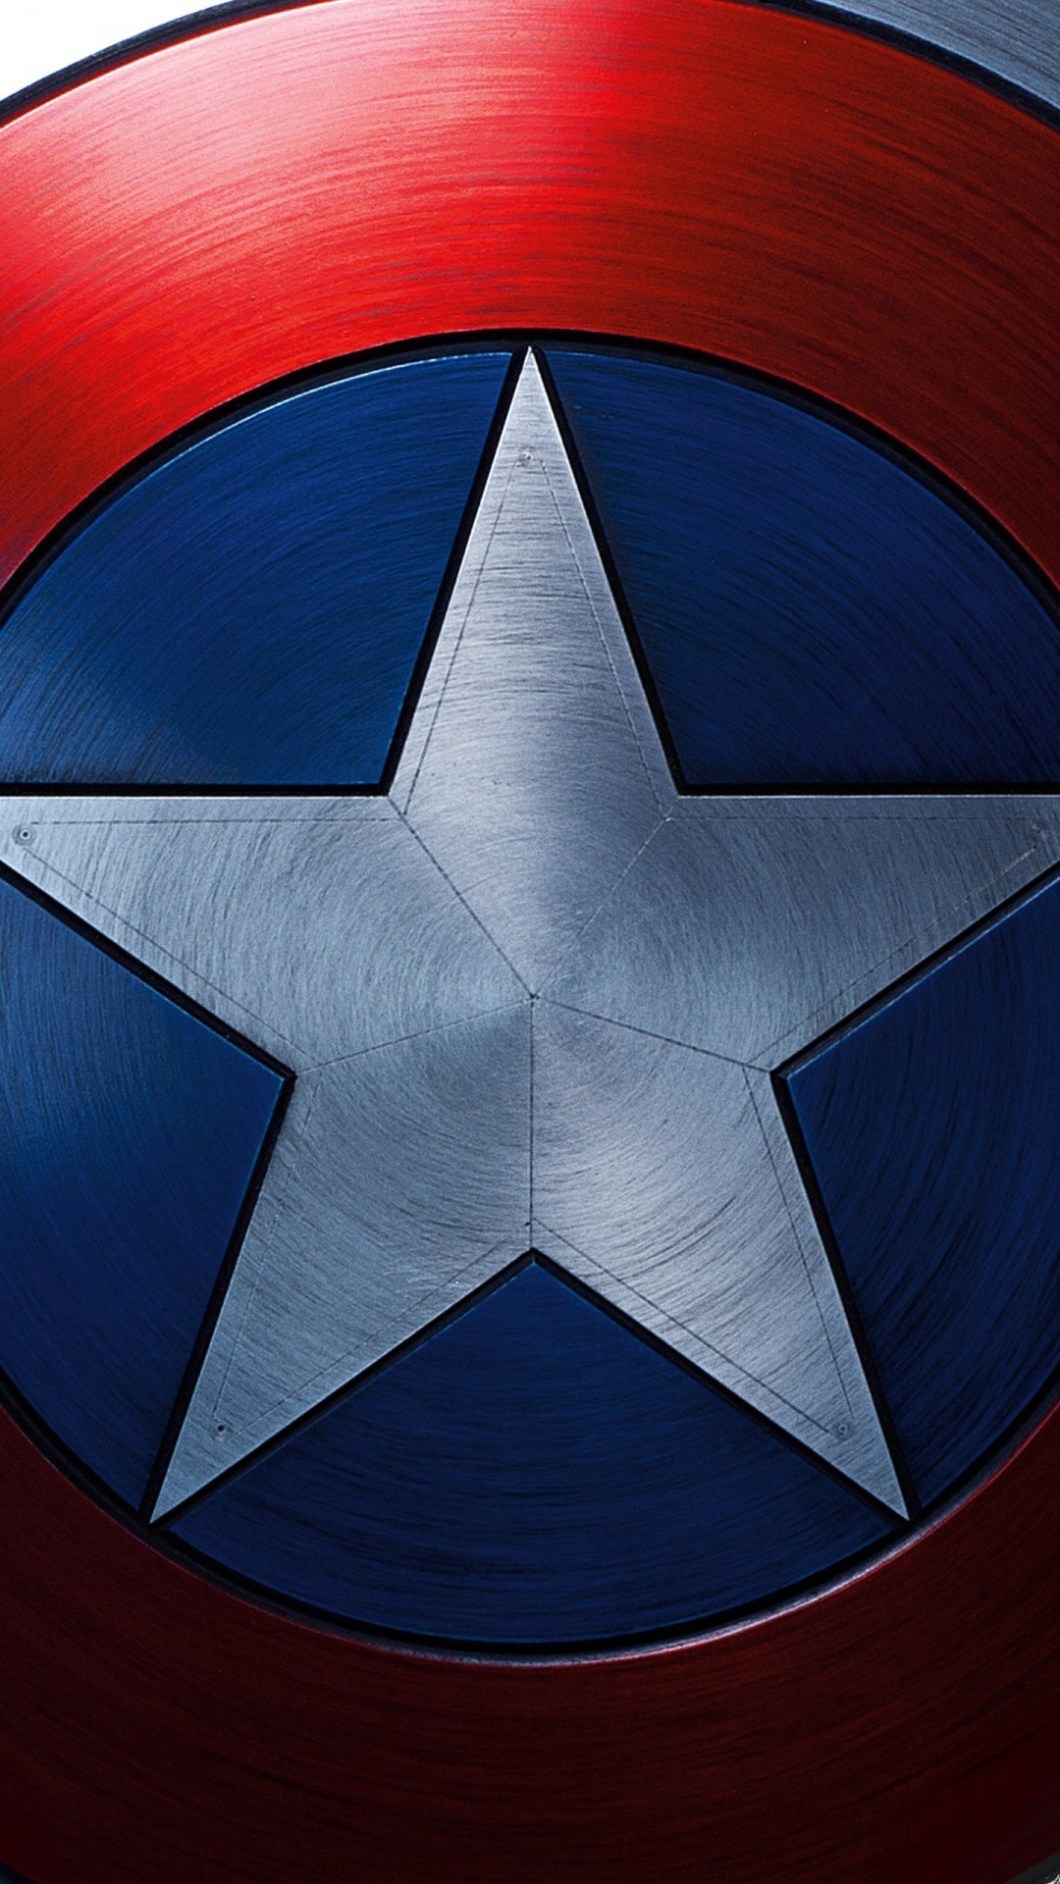 壁紙キャプテンアメリカアンドロイド用,青い,キャプテン・アメリカ,エレクトリックブルー,架空の人物,スーパーヒーロー